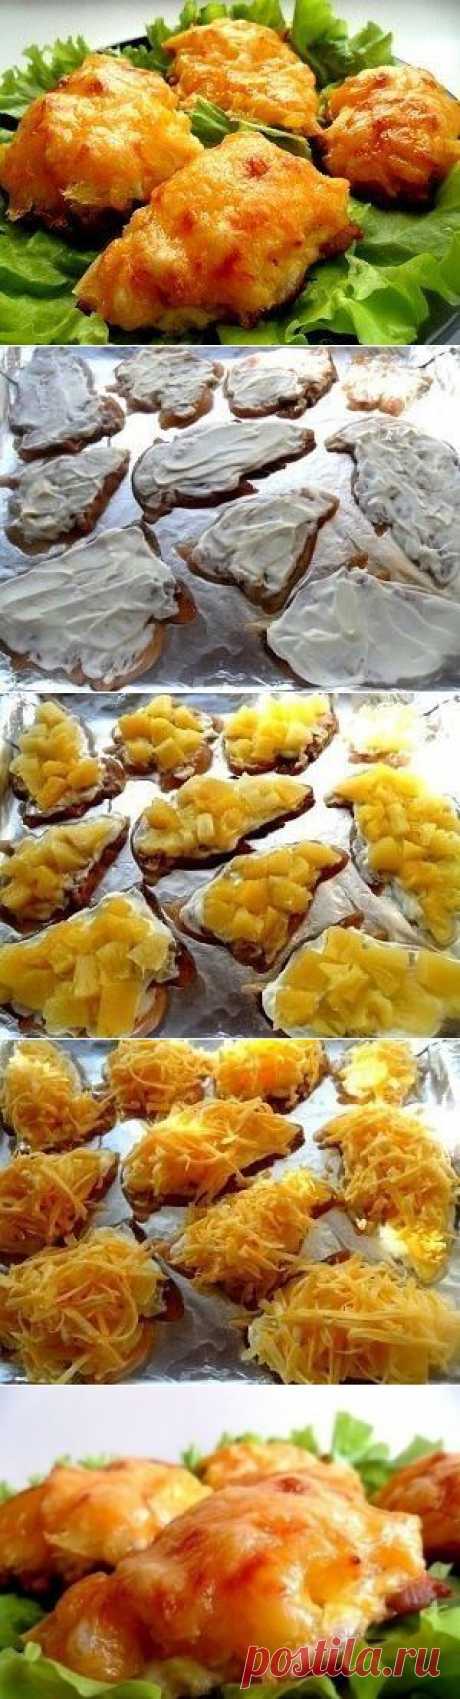 Как приготовить курица, запеченная с ананасами и сыром - рецепт, ингридиенты и фотографии